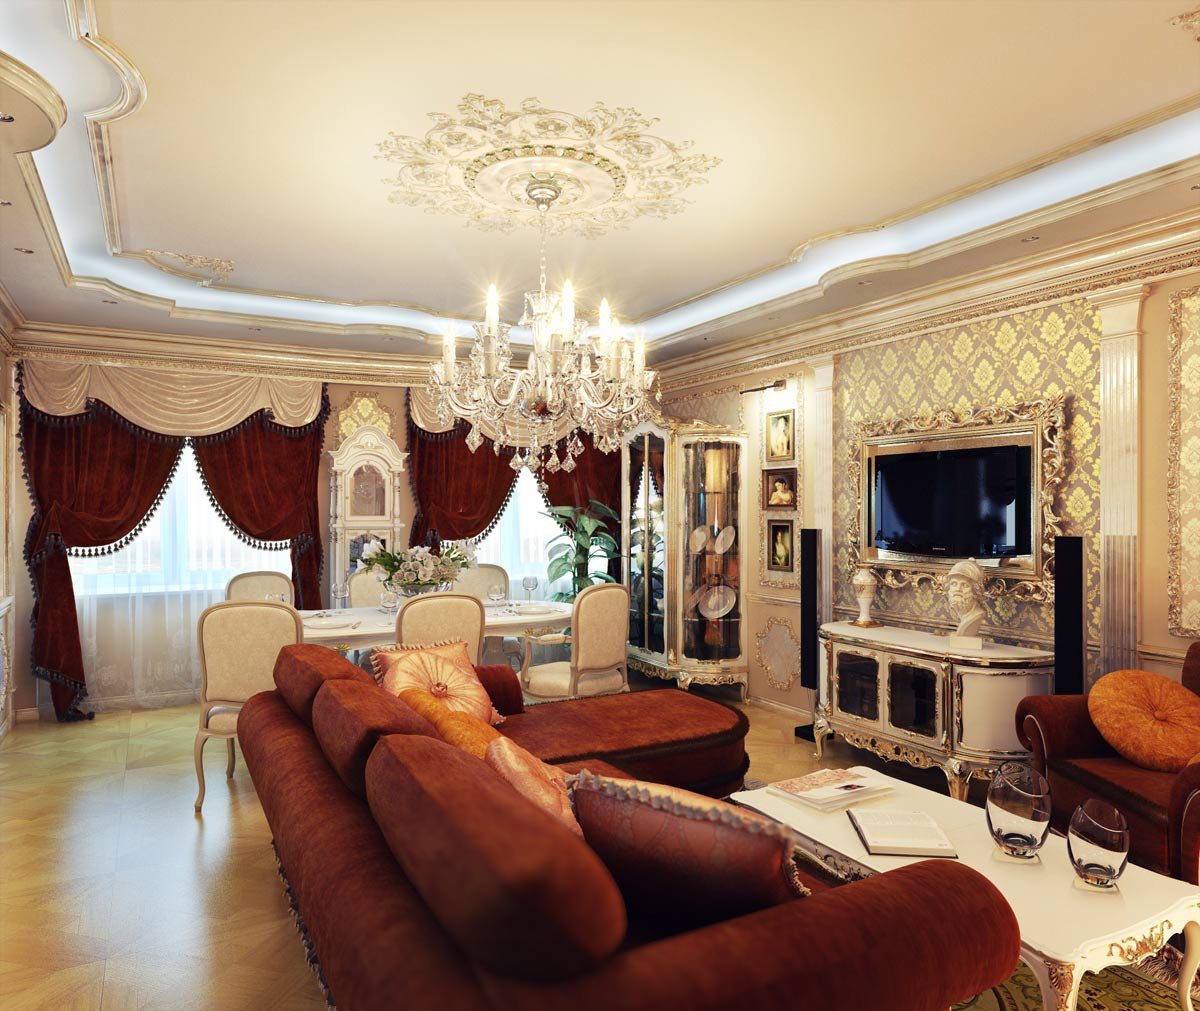 Декоративная отделка потолка плюс подсветка и лепнина вокруг люстры есть отличным украшением интерьера гостиной